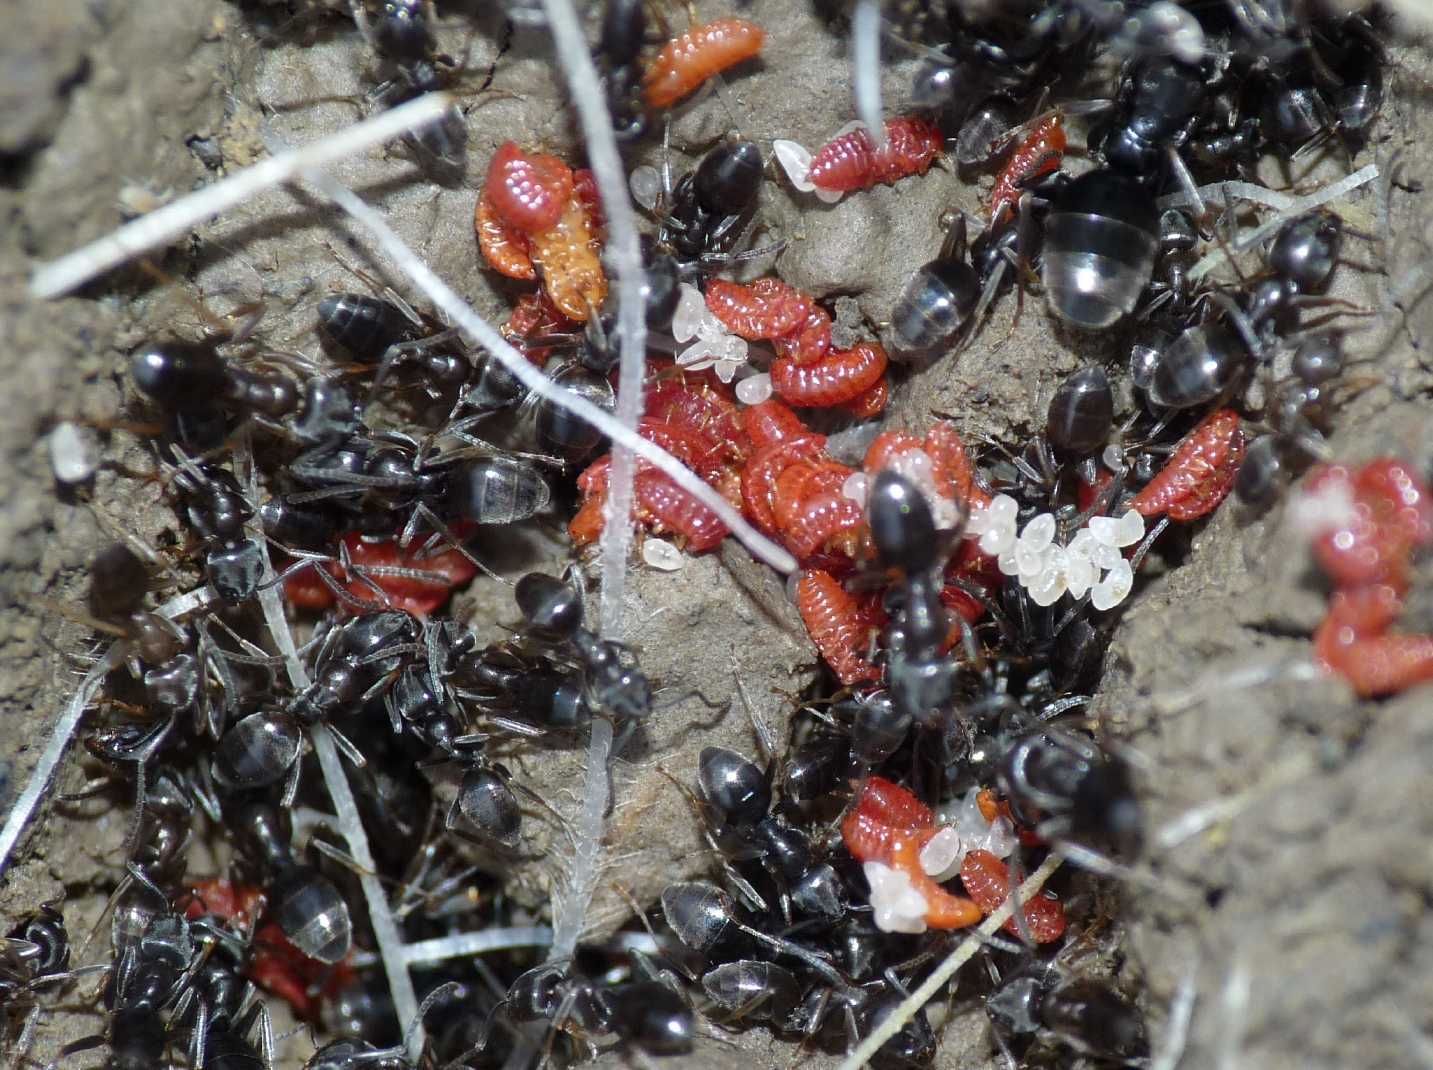 Coccidi allevati dalle formiche tapinoma